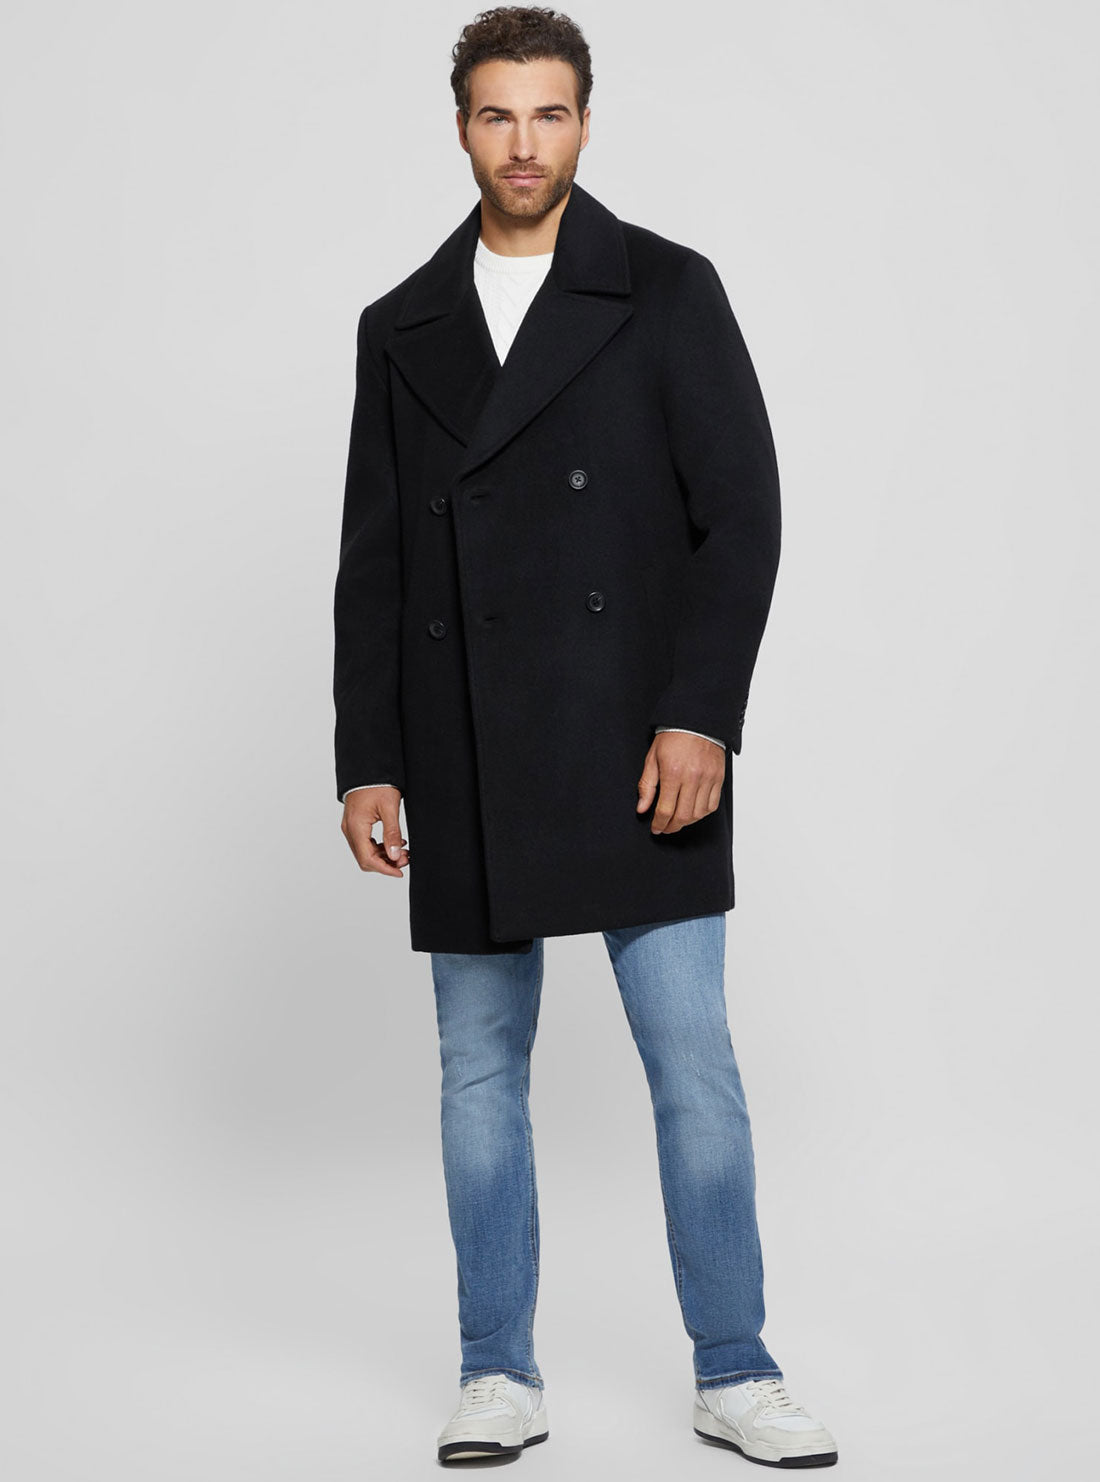 Black Bel Air Melton Wool Coat | GUESS men's apparel | full view